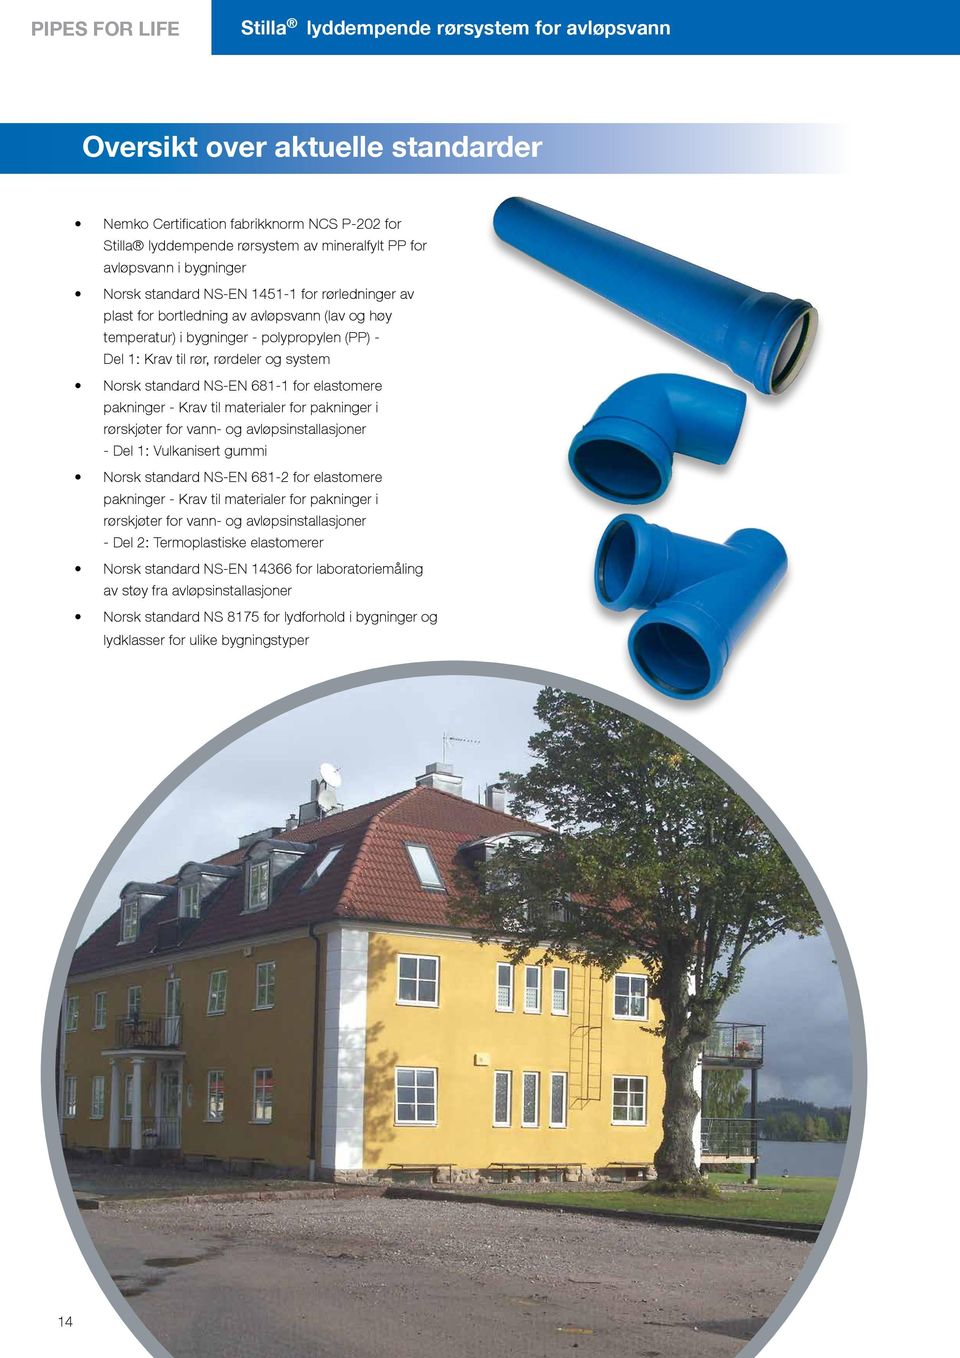 NS-EN 681-1 for elastomere pakninger - Krav til materialer for pakninger i rørskjøter for vann- og avløpsinstallasjoner - Del 1: Vulkanisert gummi Norsk standard NS-EN 681-2 for elastomere pakninger